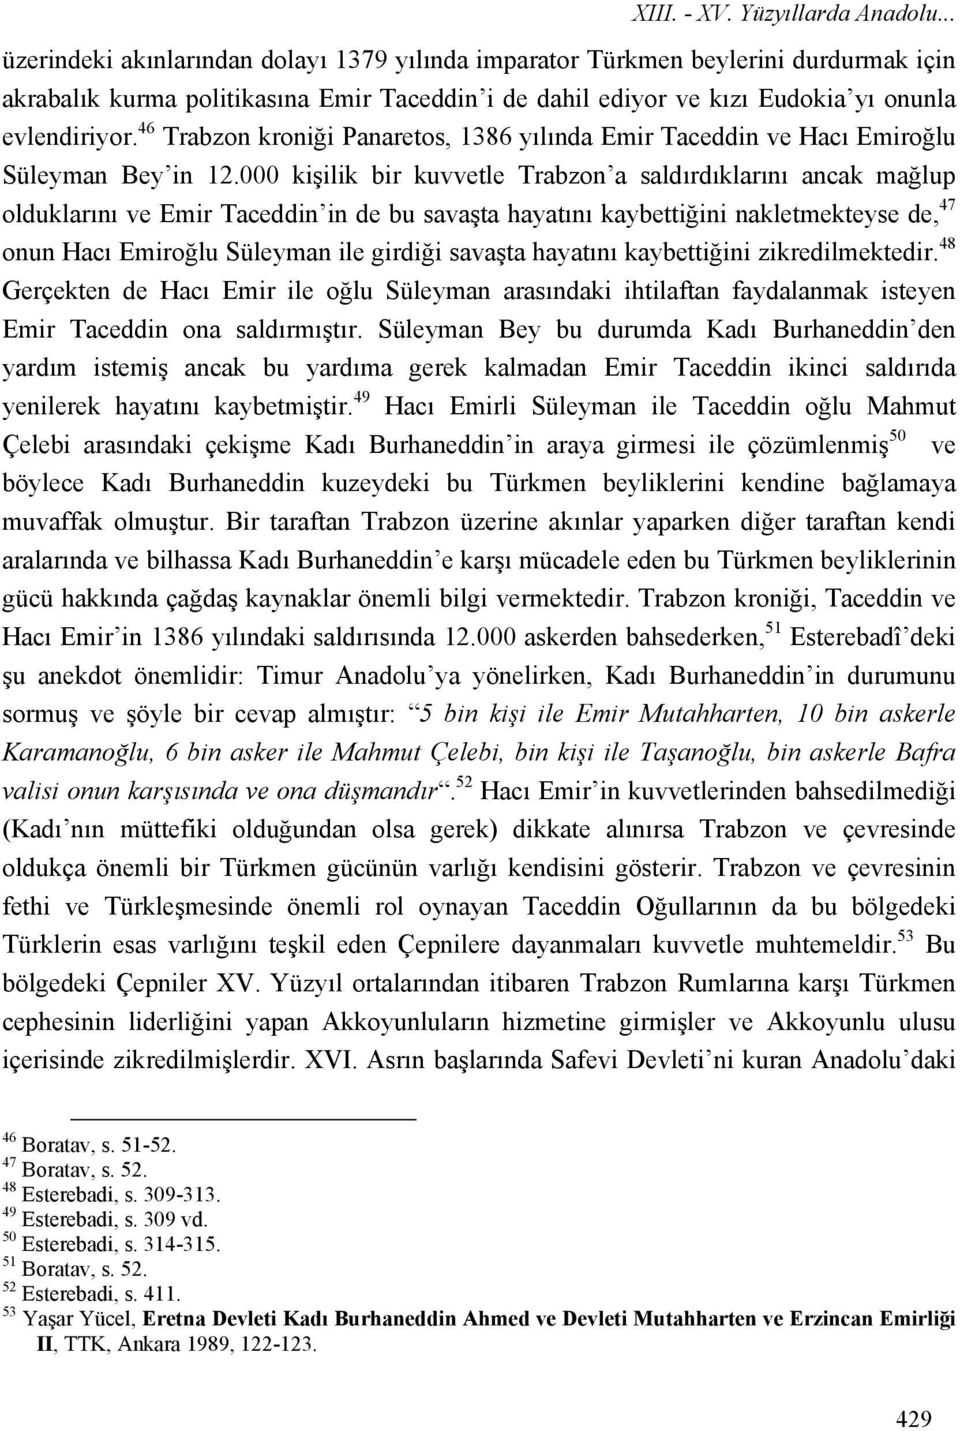 46 Trabzon kroniği Panaretos, 1386 yılında Emir Taceddin ve Hacı Emiroğlu Süleyman Bey in 12.